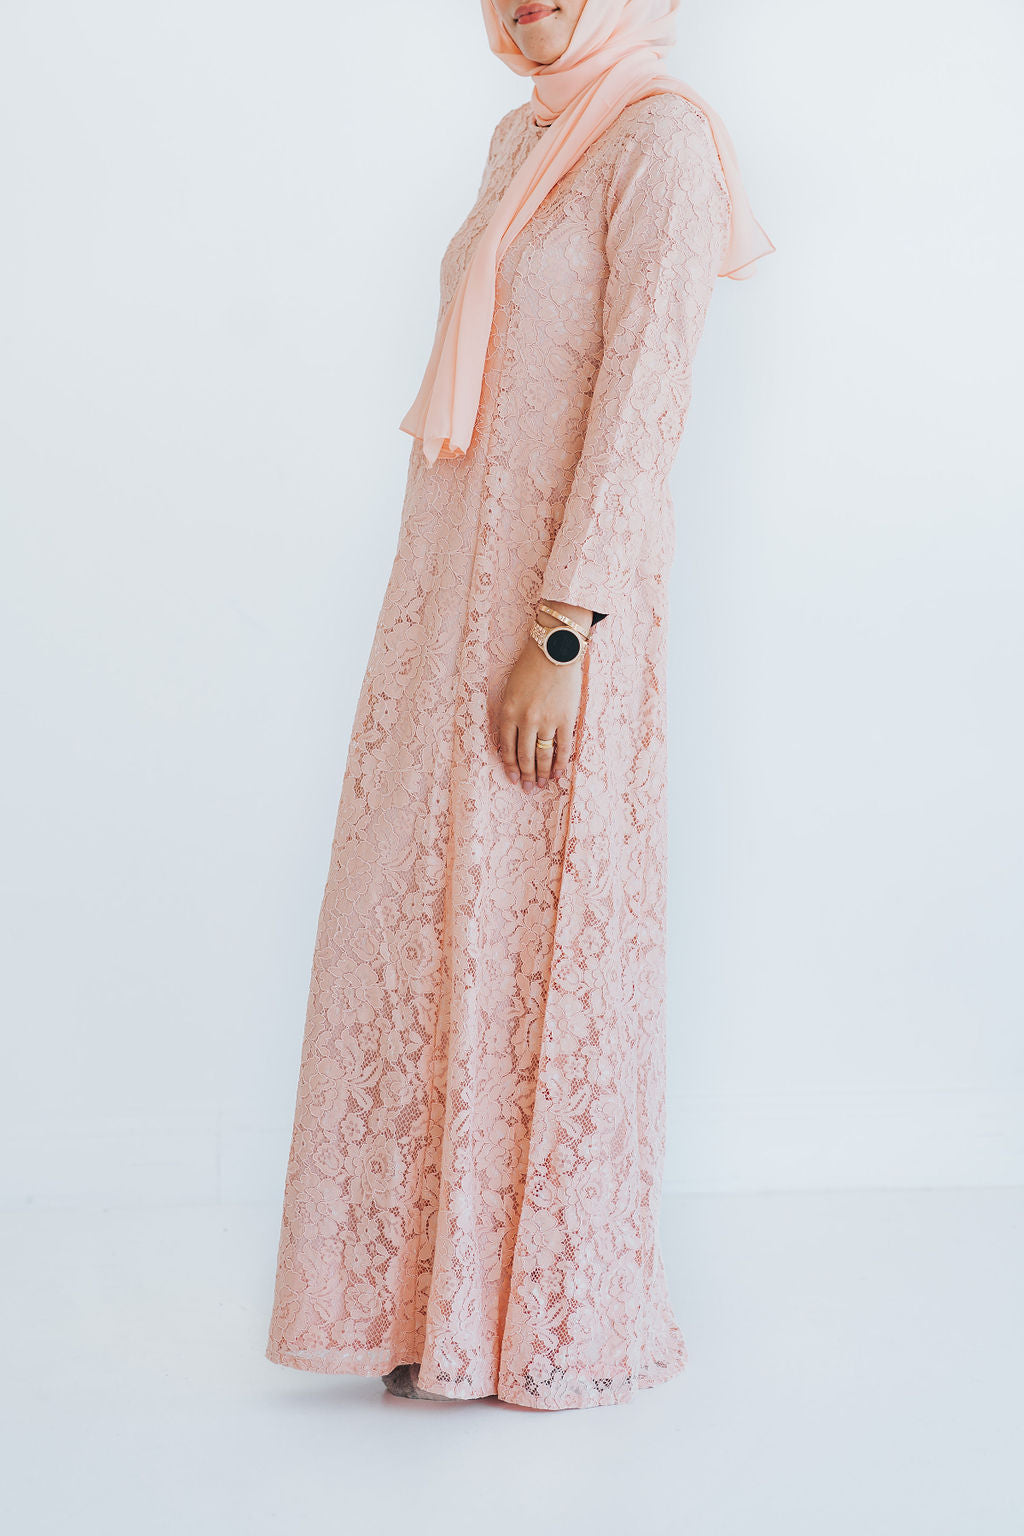 Peach Lace Formal Abaya